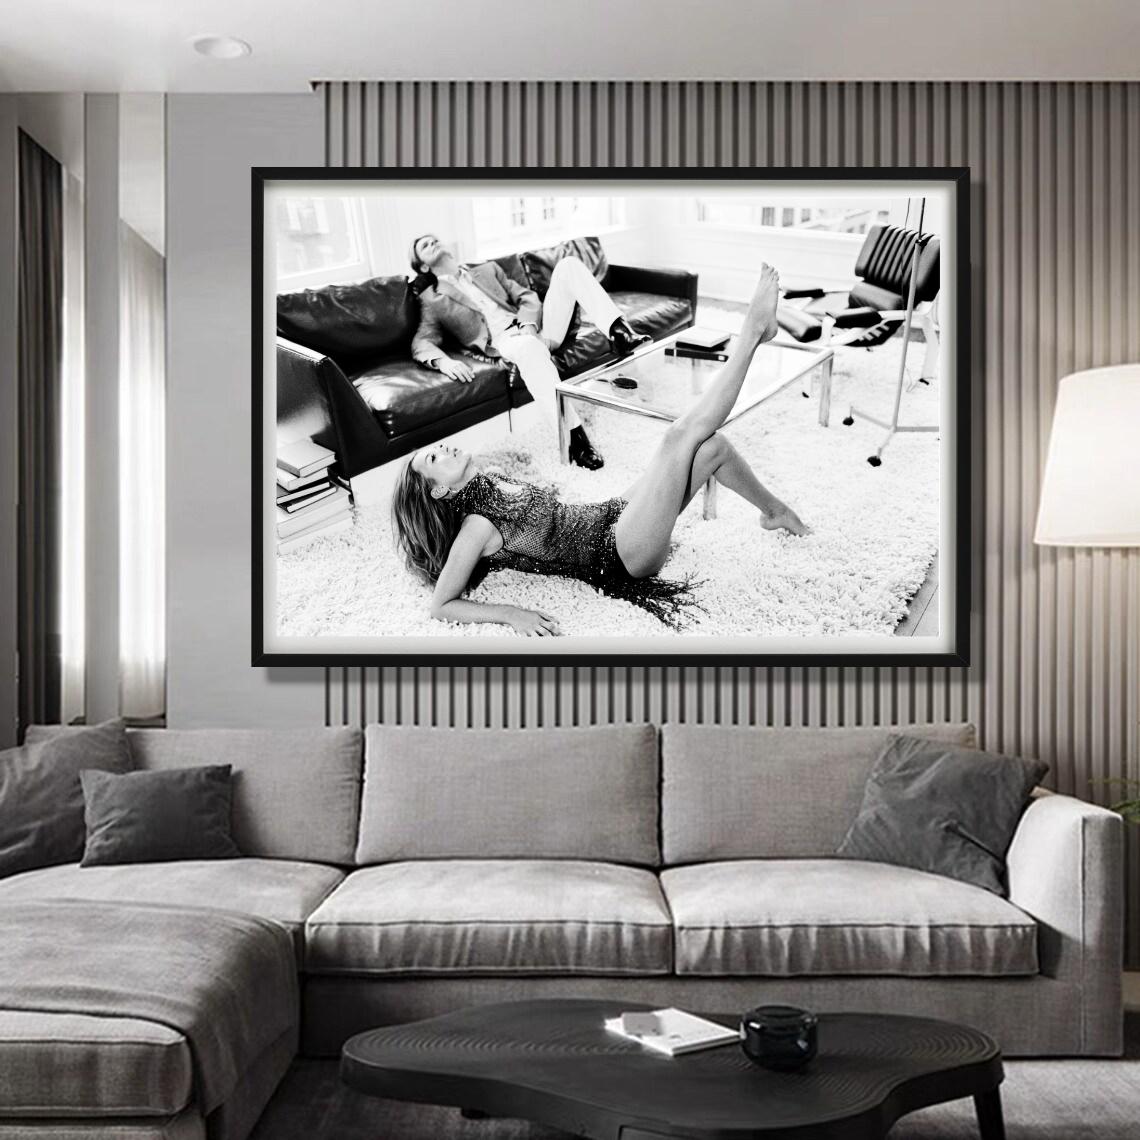 David Bowie und Kate Moss II – in einem Wohnzimmer, Kunstfotografie, 2003 (Grau), Black and White Photograph, von Ellen von Unwerth